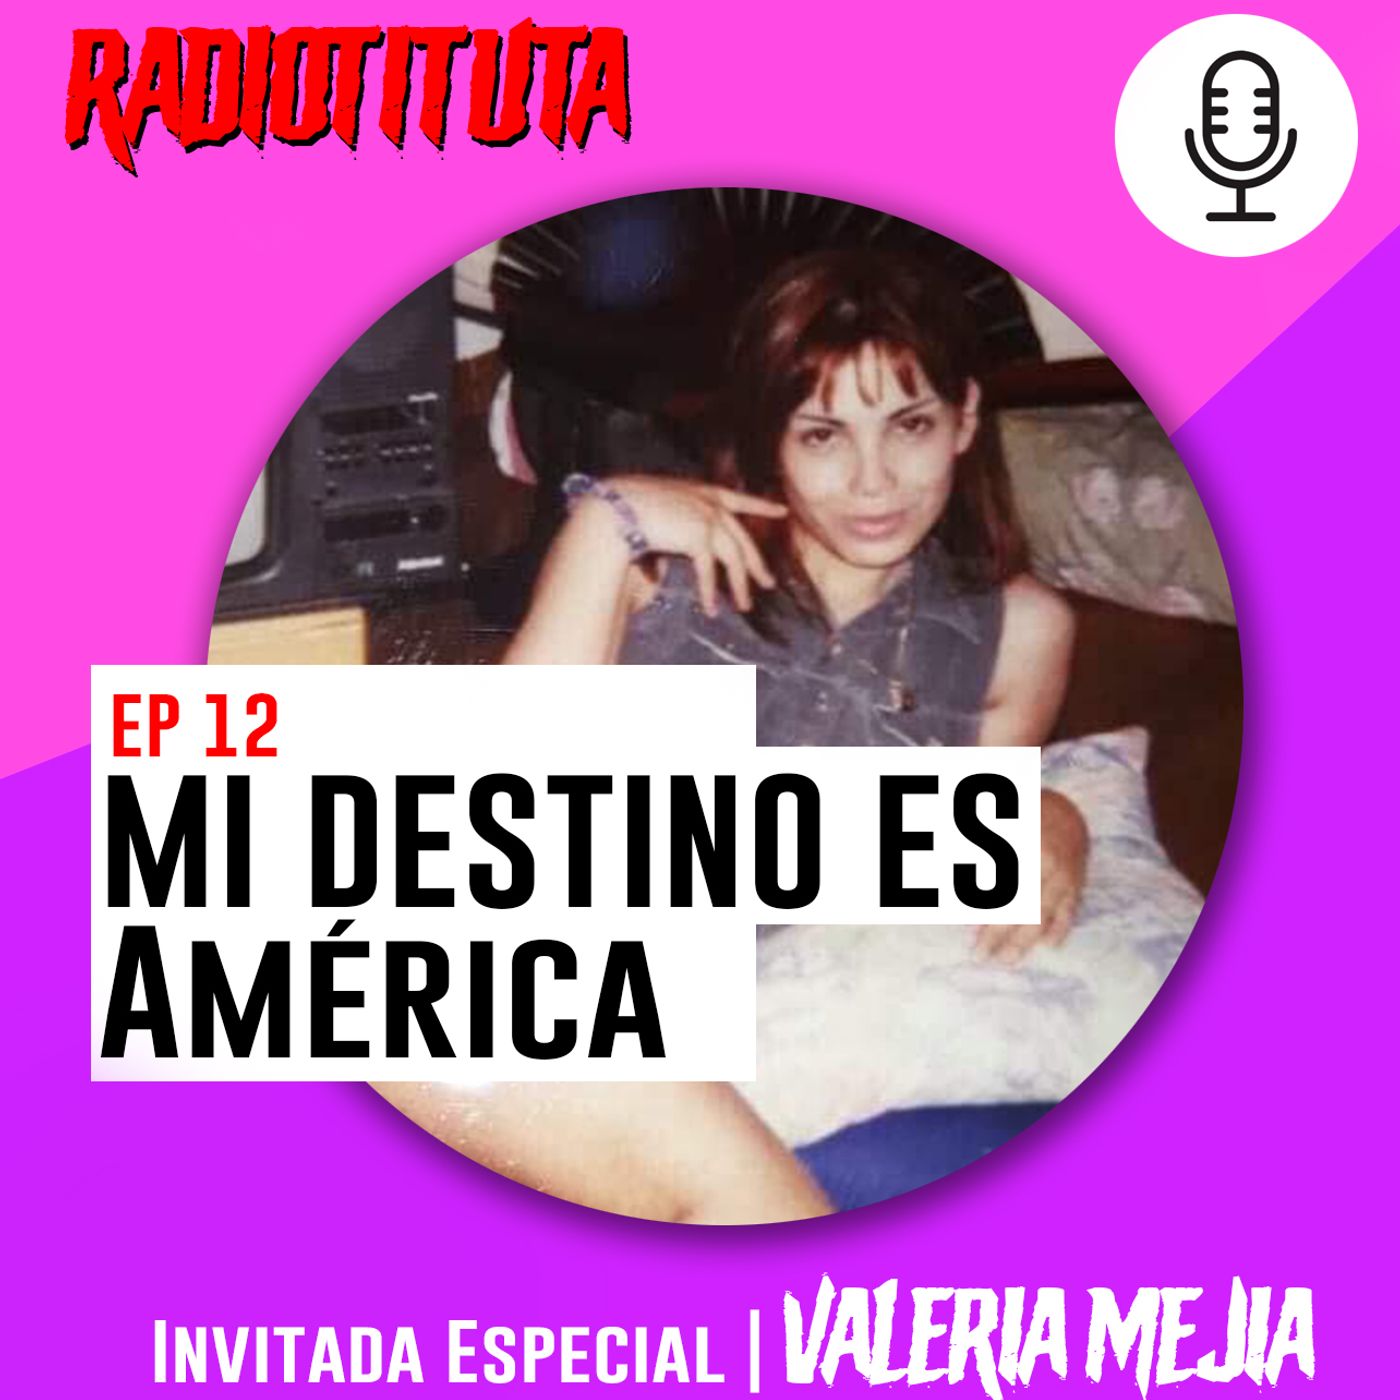 EP 12 Mi destino es América | Invitada Valeria Mejía